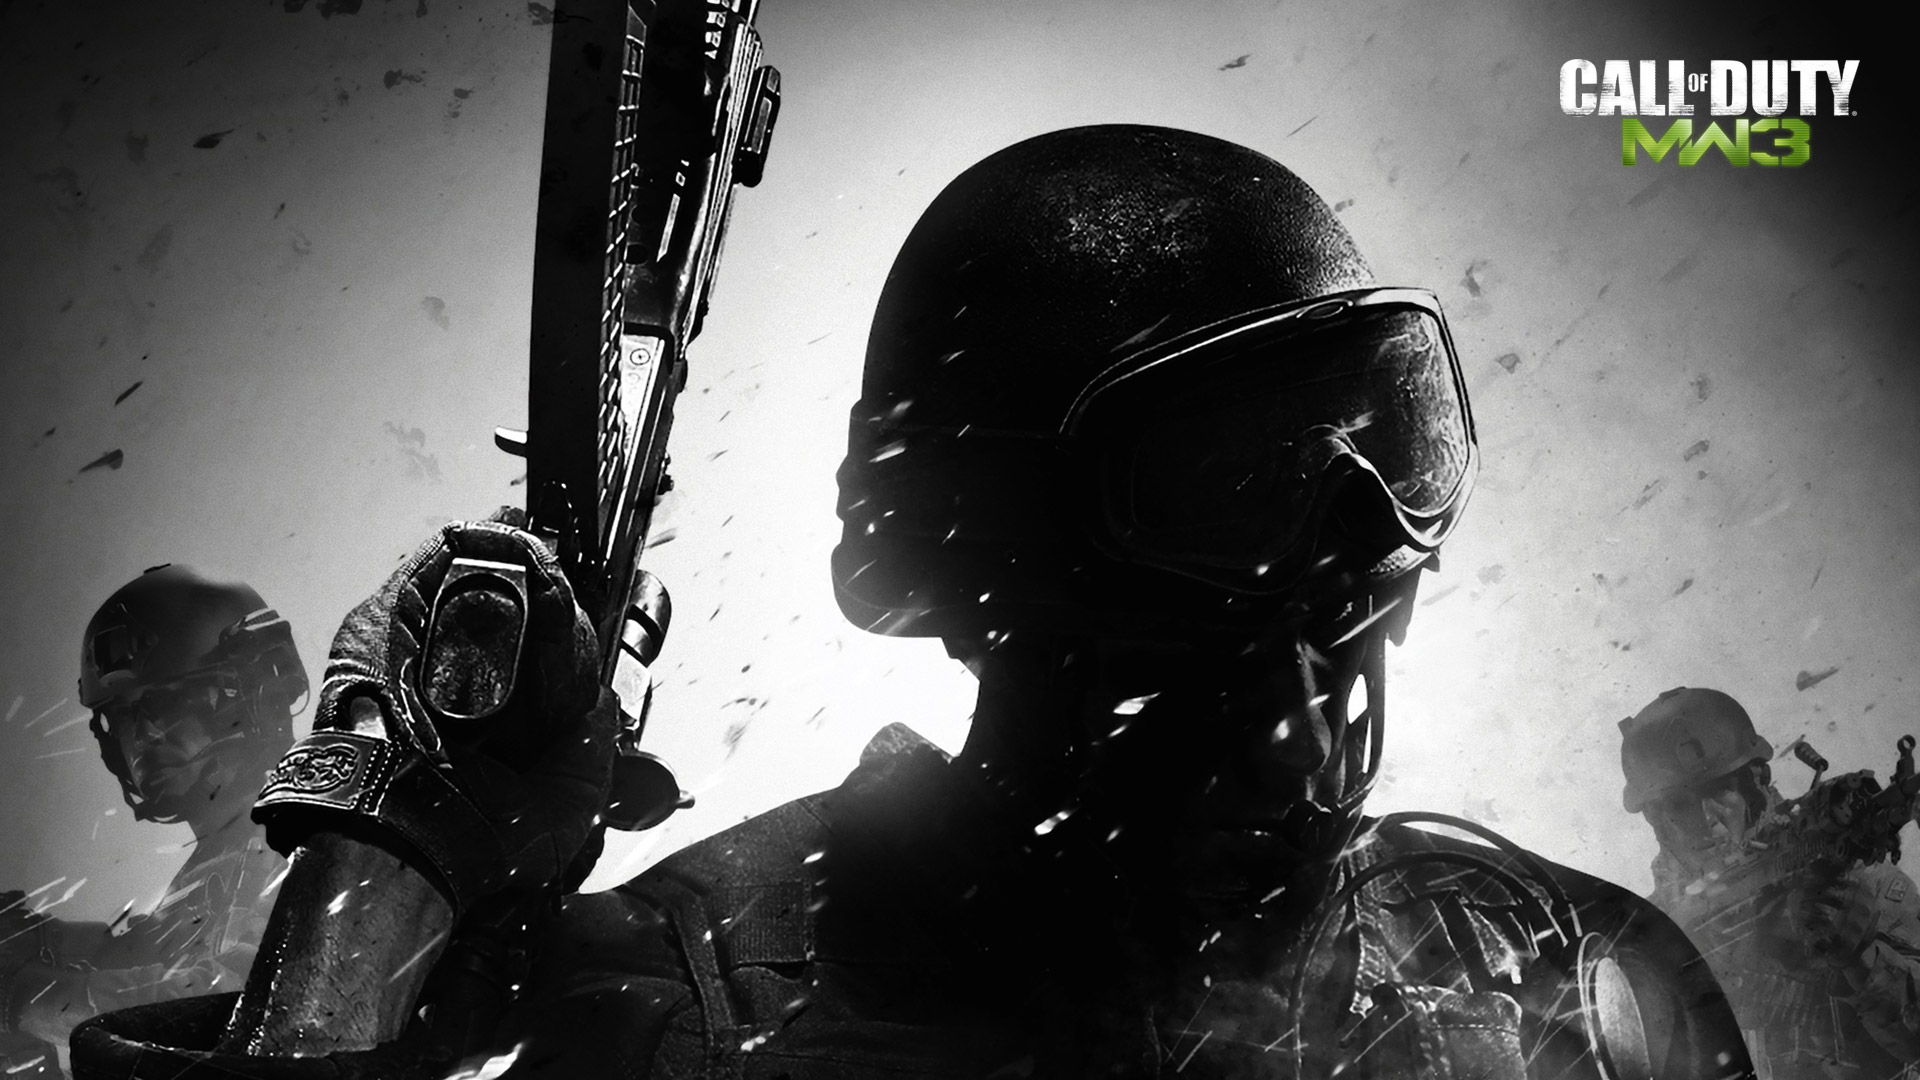 Call of Duty Modern Warfare 3 Wallpaper in 1920x1080